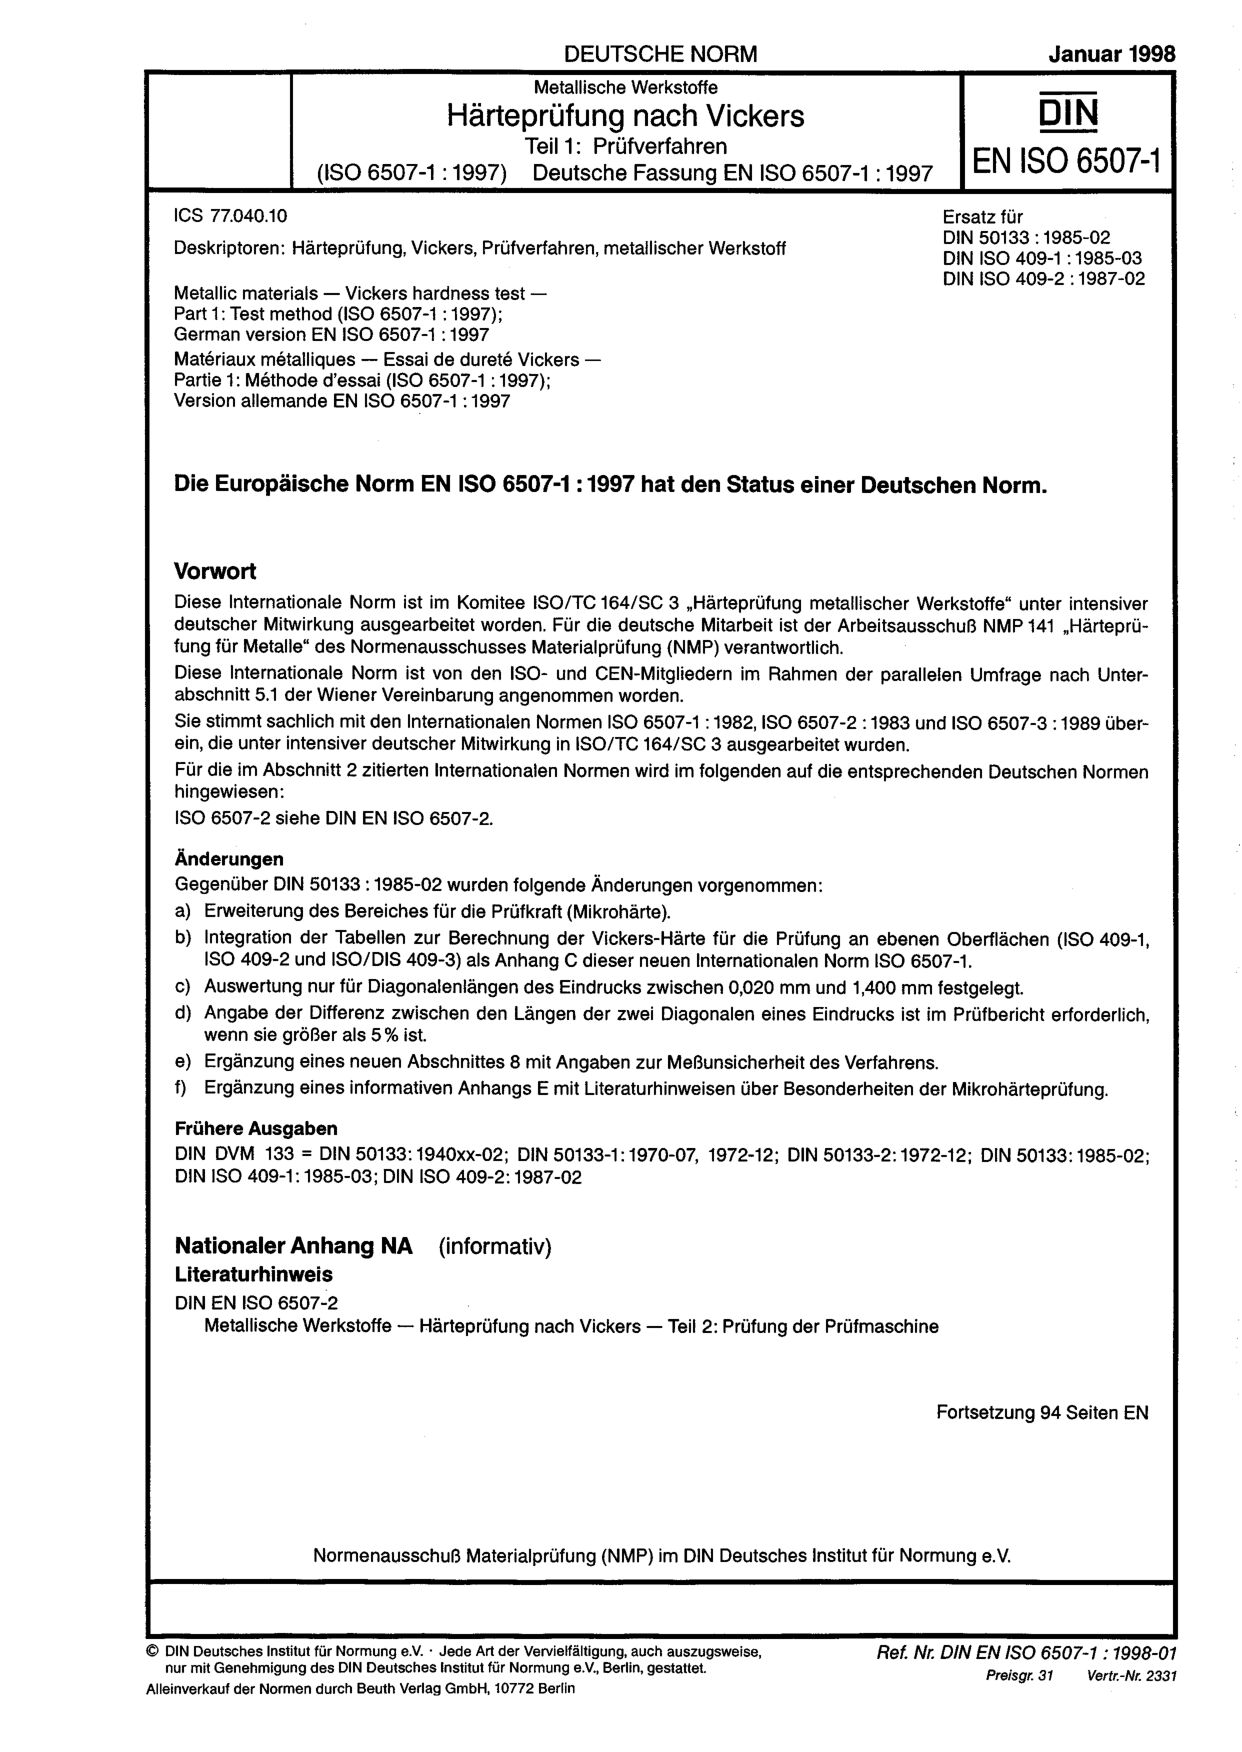 DIN EN ISO 6507-1:1998